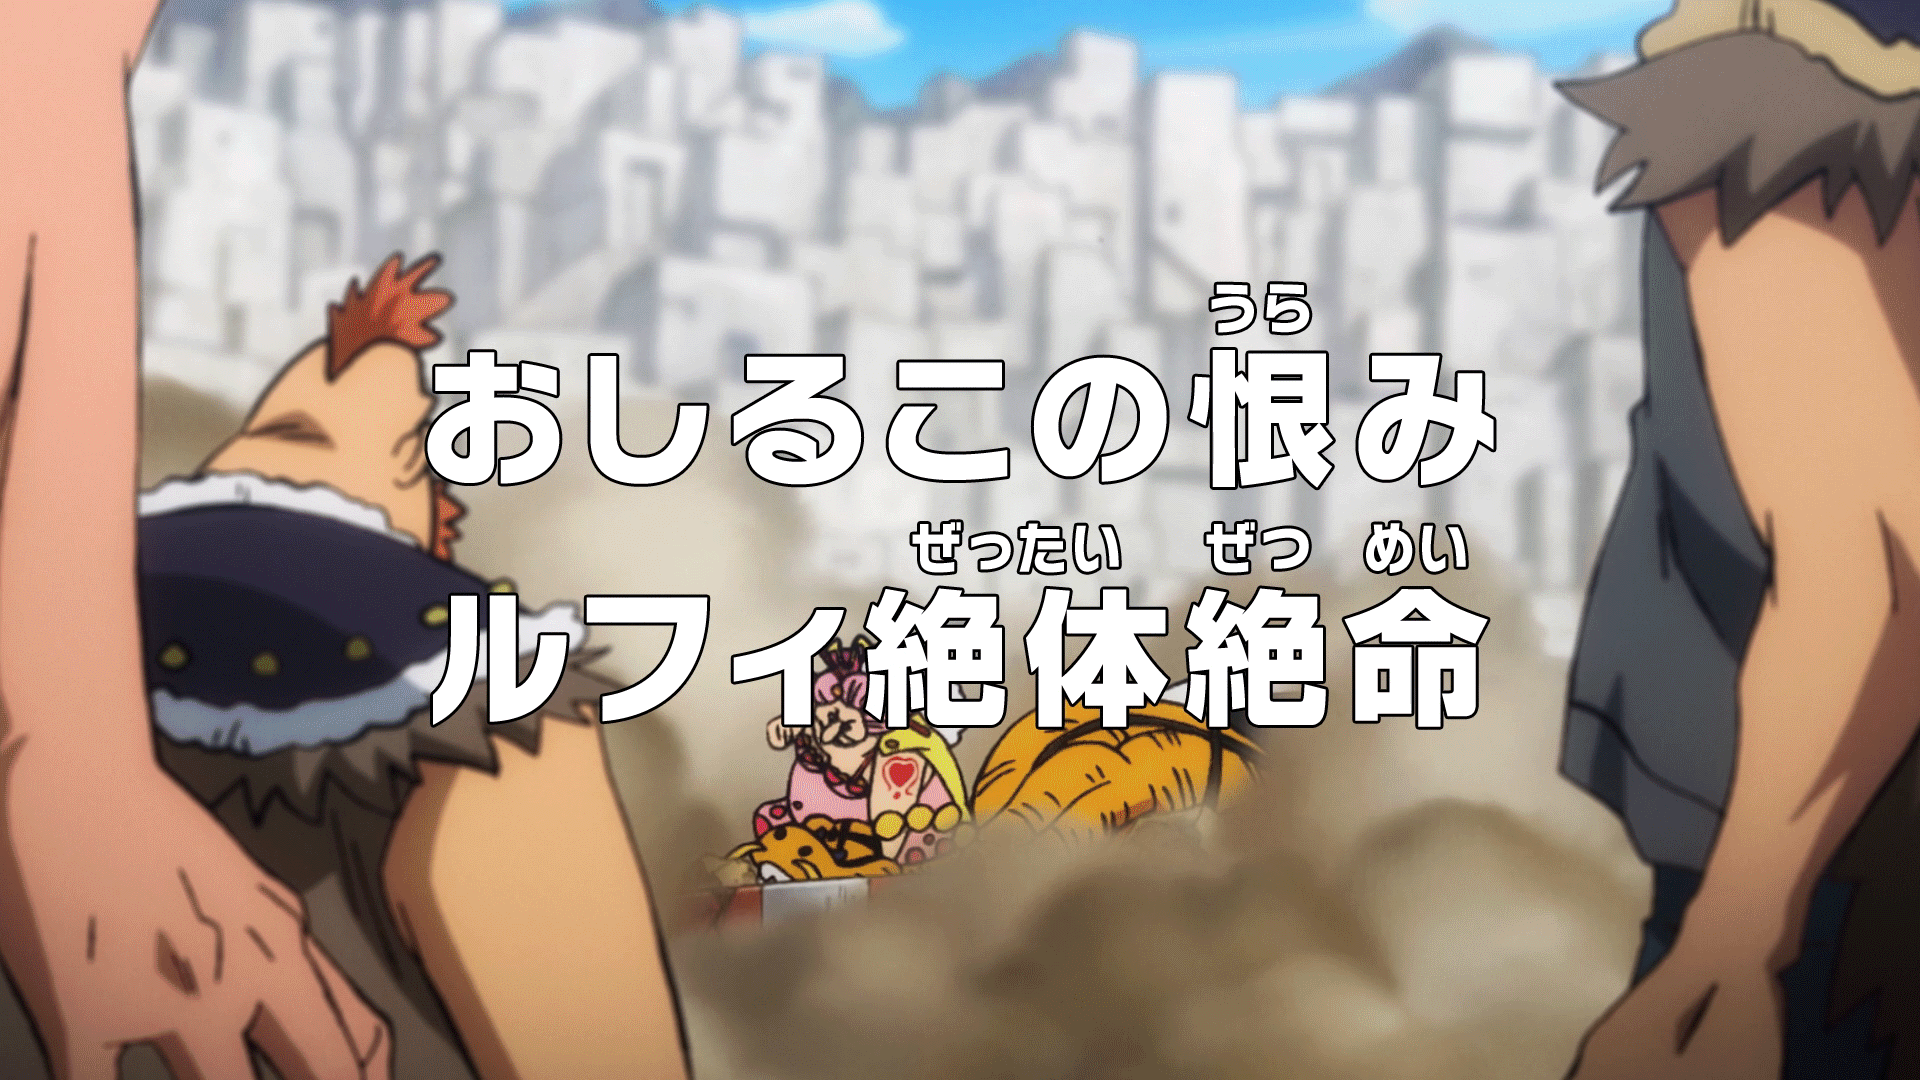 Episode 945 One Piece Wiki Fandom